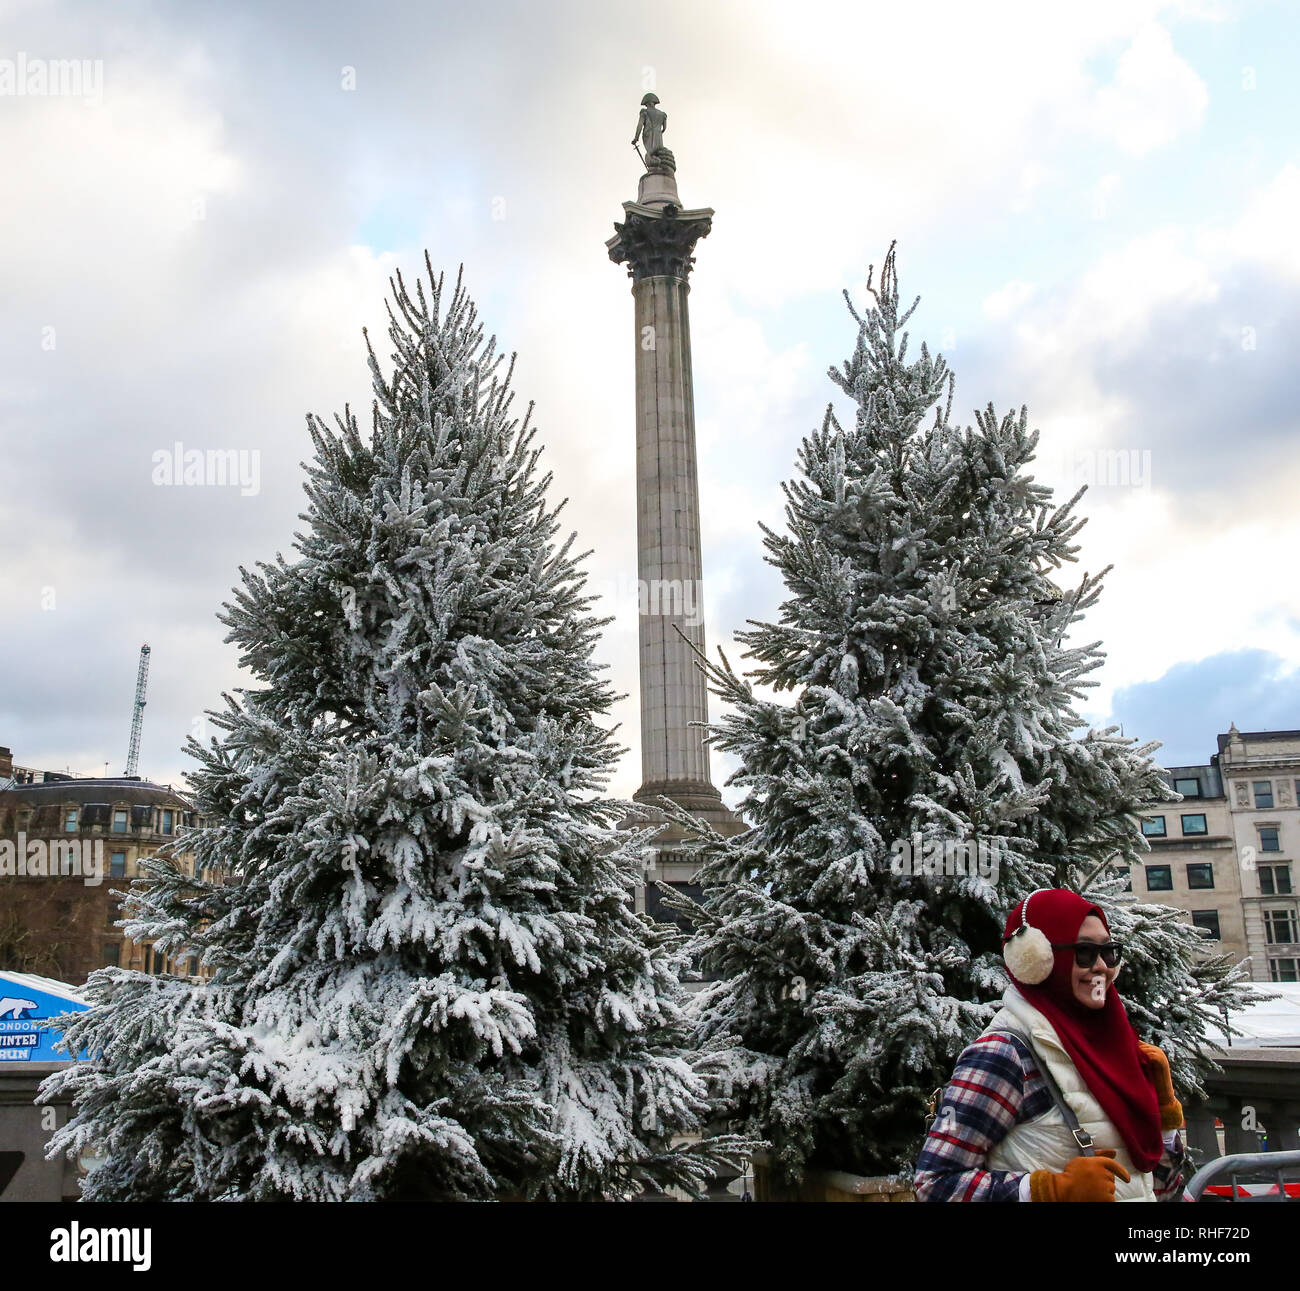 Tannen im Londoner Trafalgar Square werden gesehen in fake Schnee in Vorbereitung auf die fünfte Cancer Research UK London bedeckt, im Winter laufen, die am Sonntag, den 3. Februar statt. Die 10 k laufen wird vom Trafalgar Square, die die Läufer auf den Kurs mit einem Platzen der Schnee eingestellt. Stockfoto